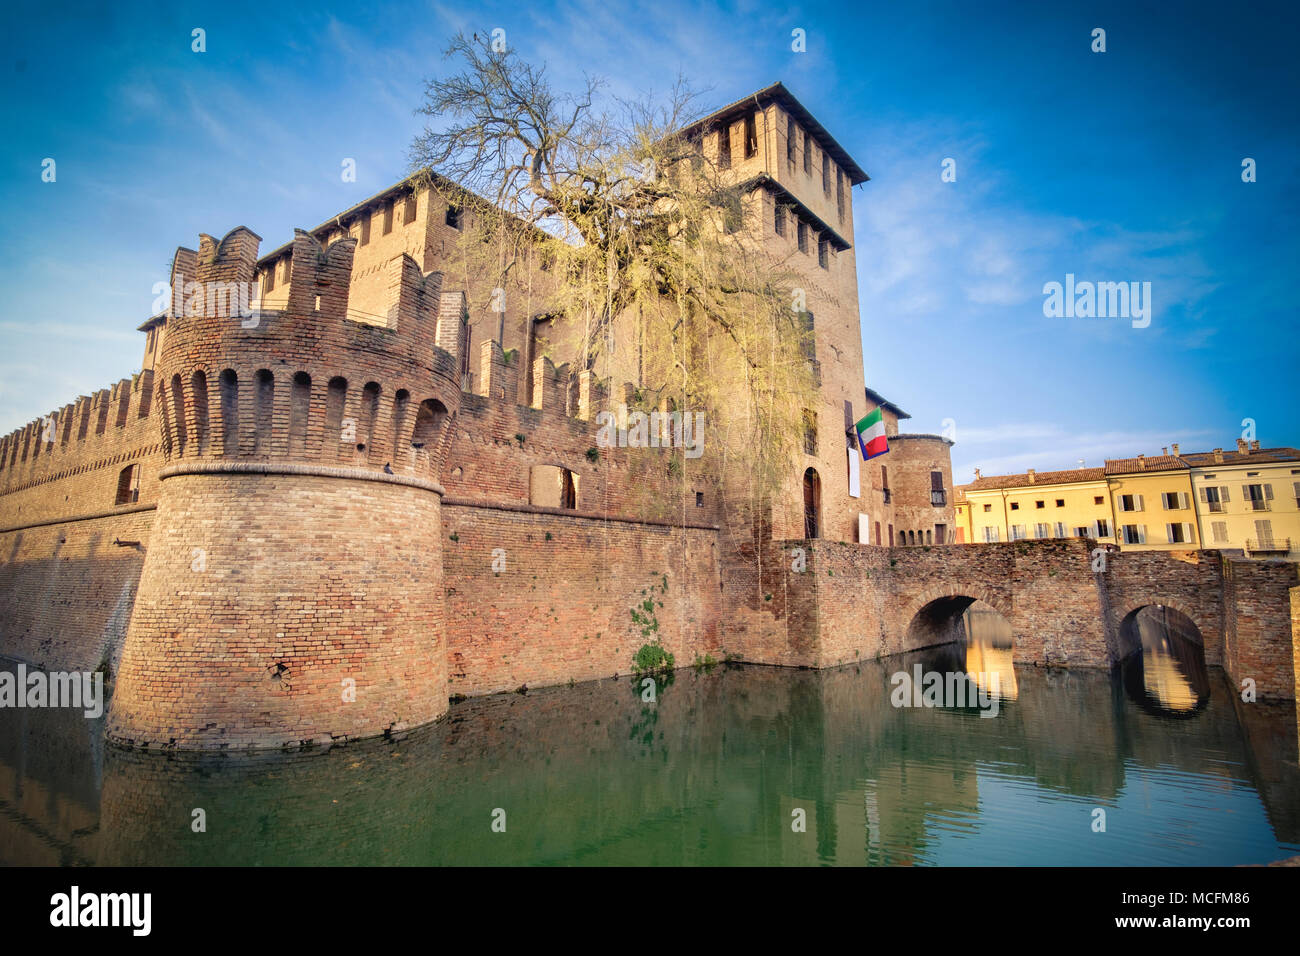 Les extérieurs des châteaux italiens - Parma - Soragna - Emilie Romagne - Italie Banque D'Images